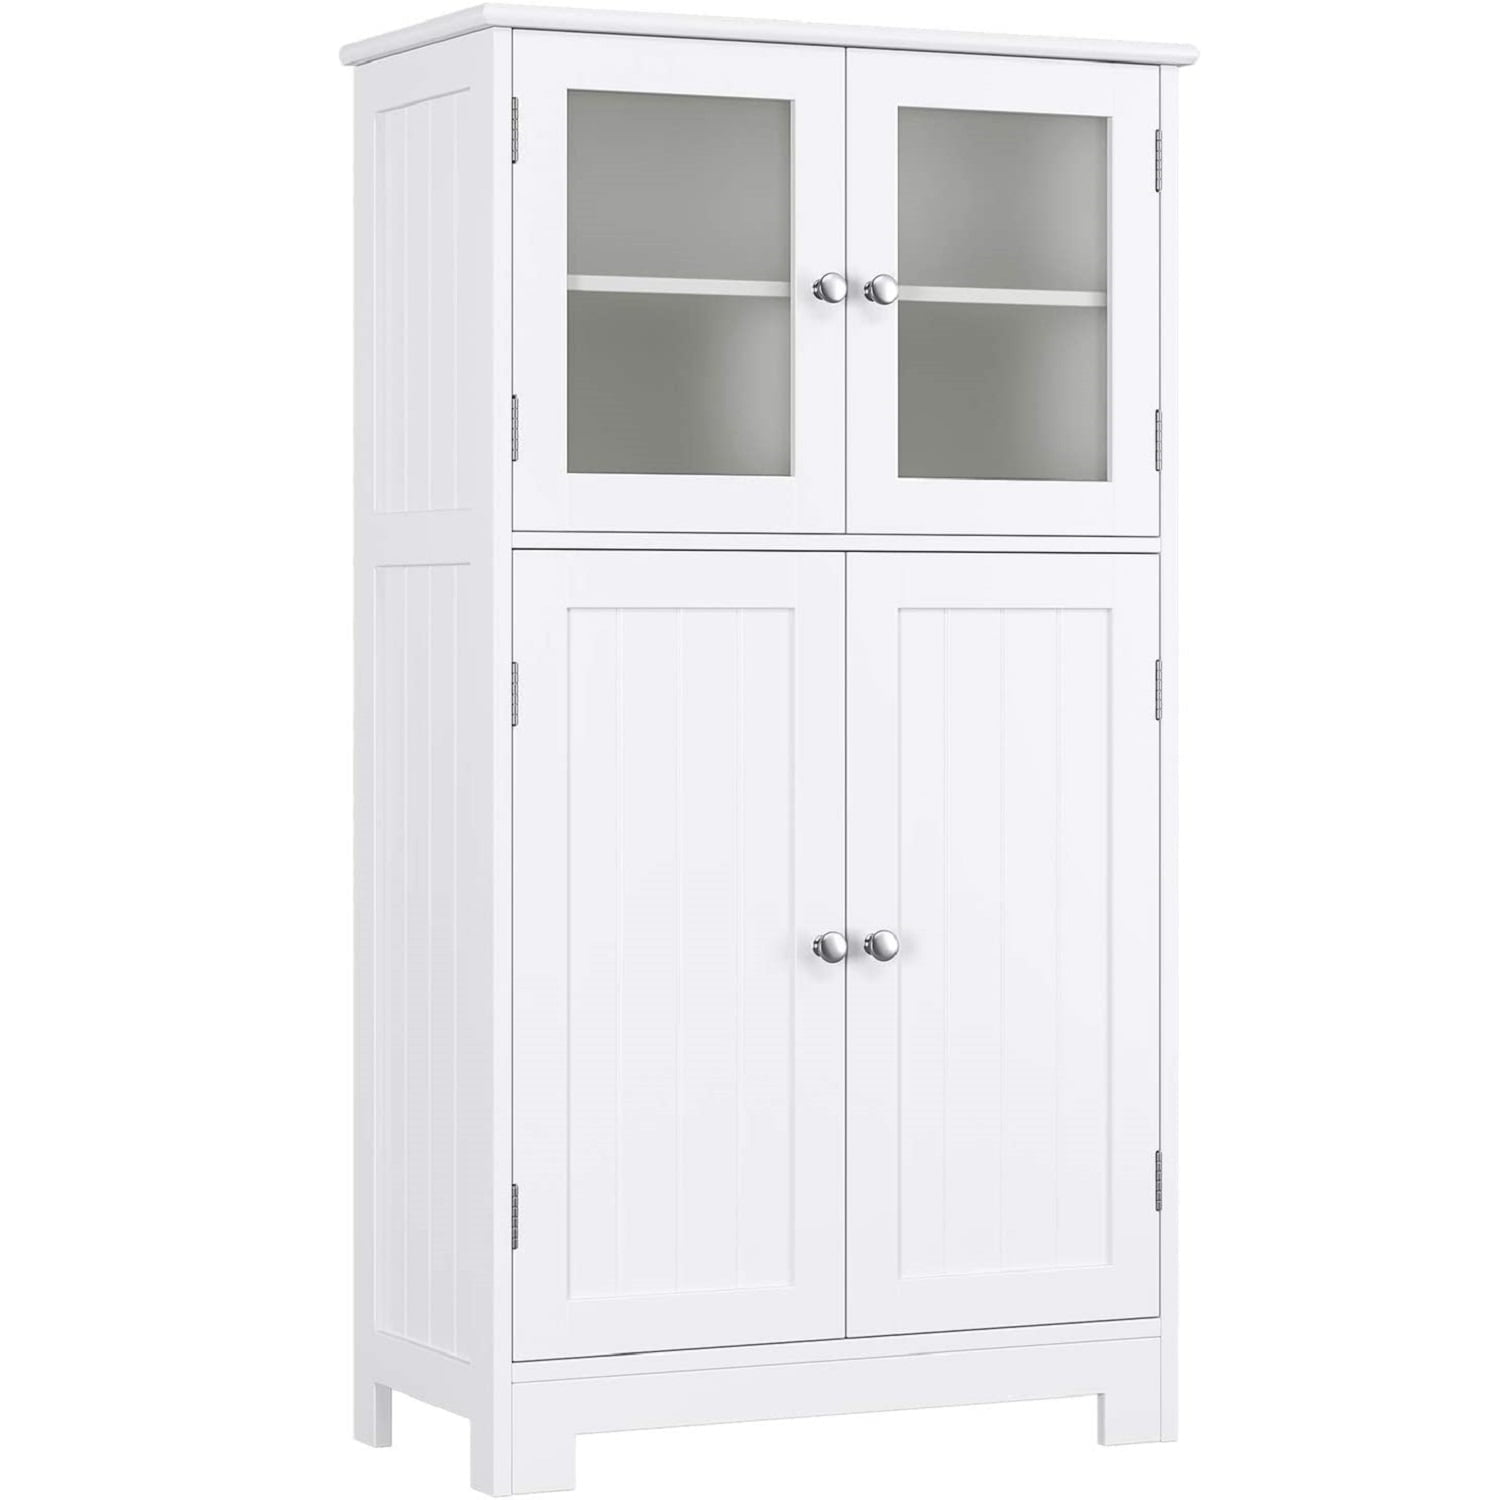 Homfa Bathroom Storage Cabinet Floor White Wooden Linen With Shelves And Doors Kitchen Cupboard Com